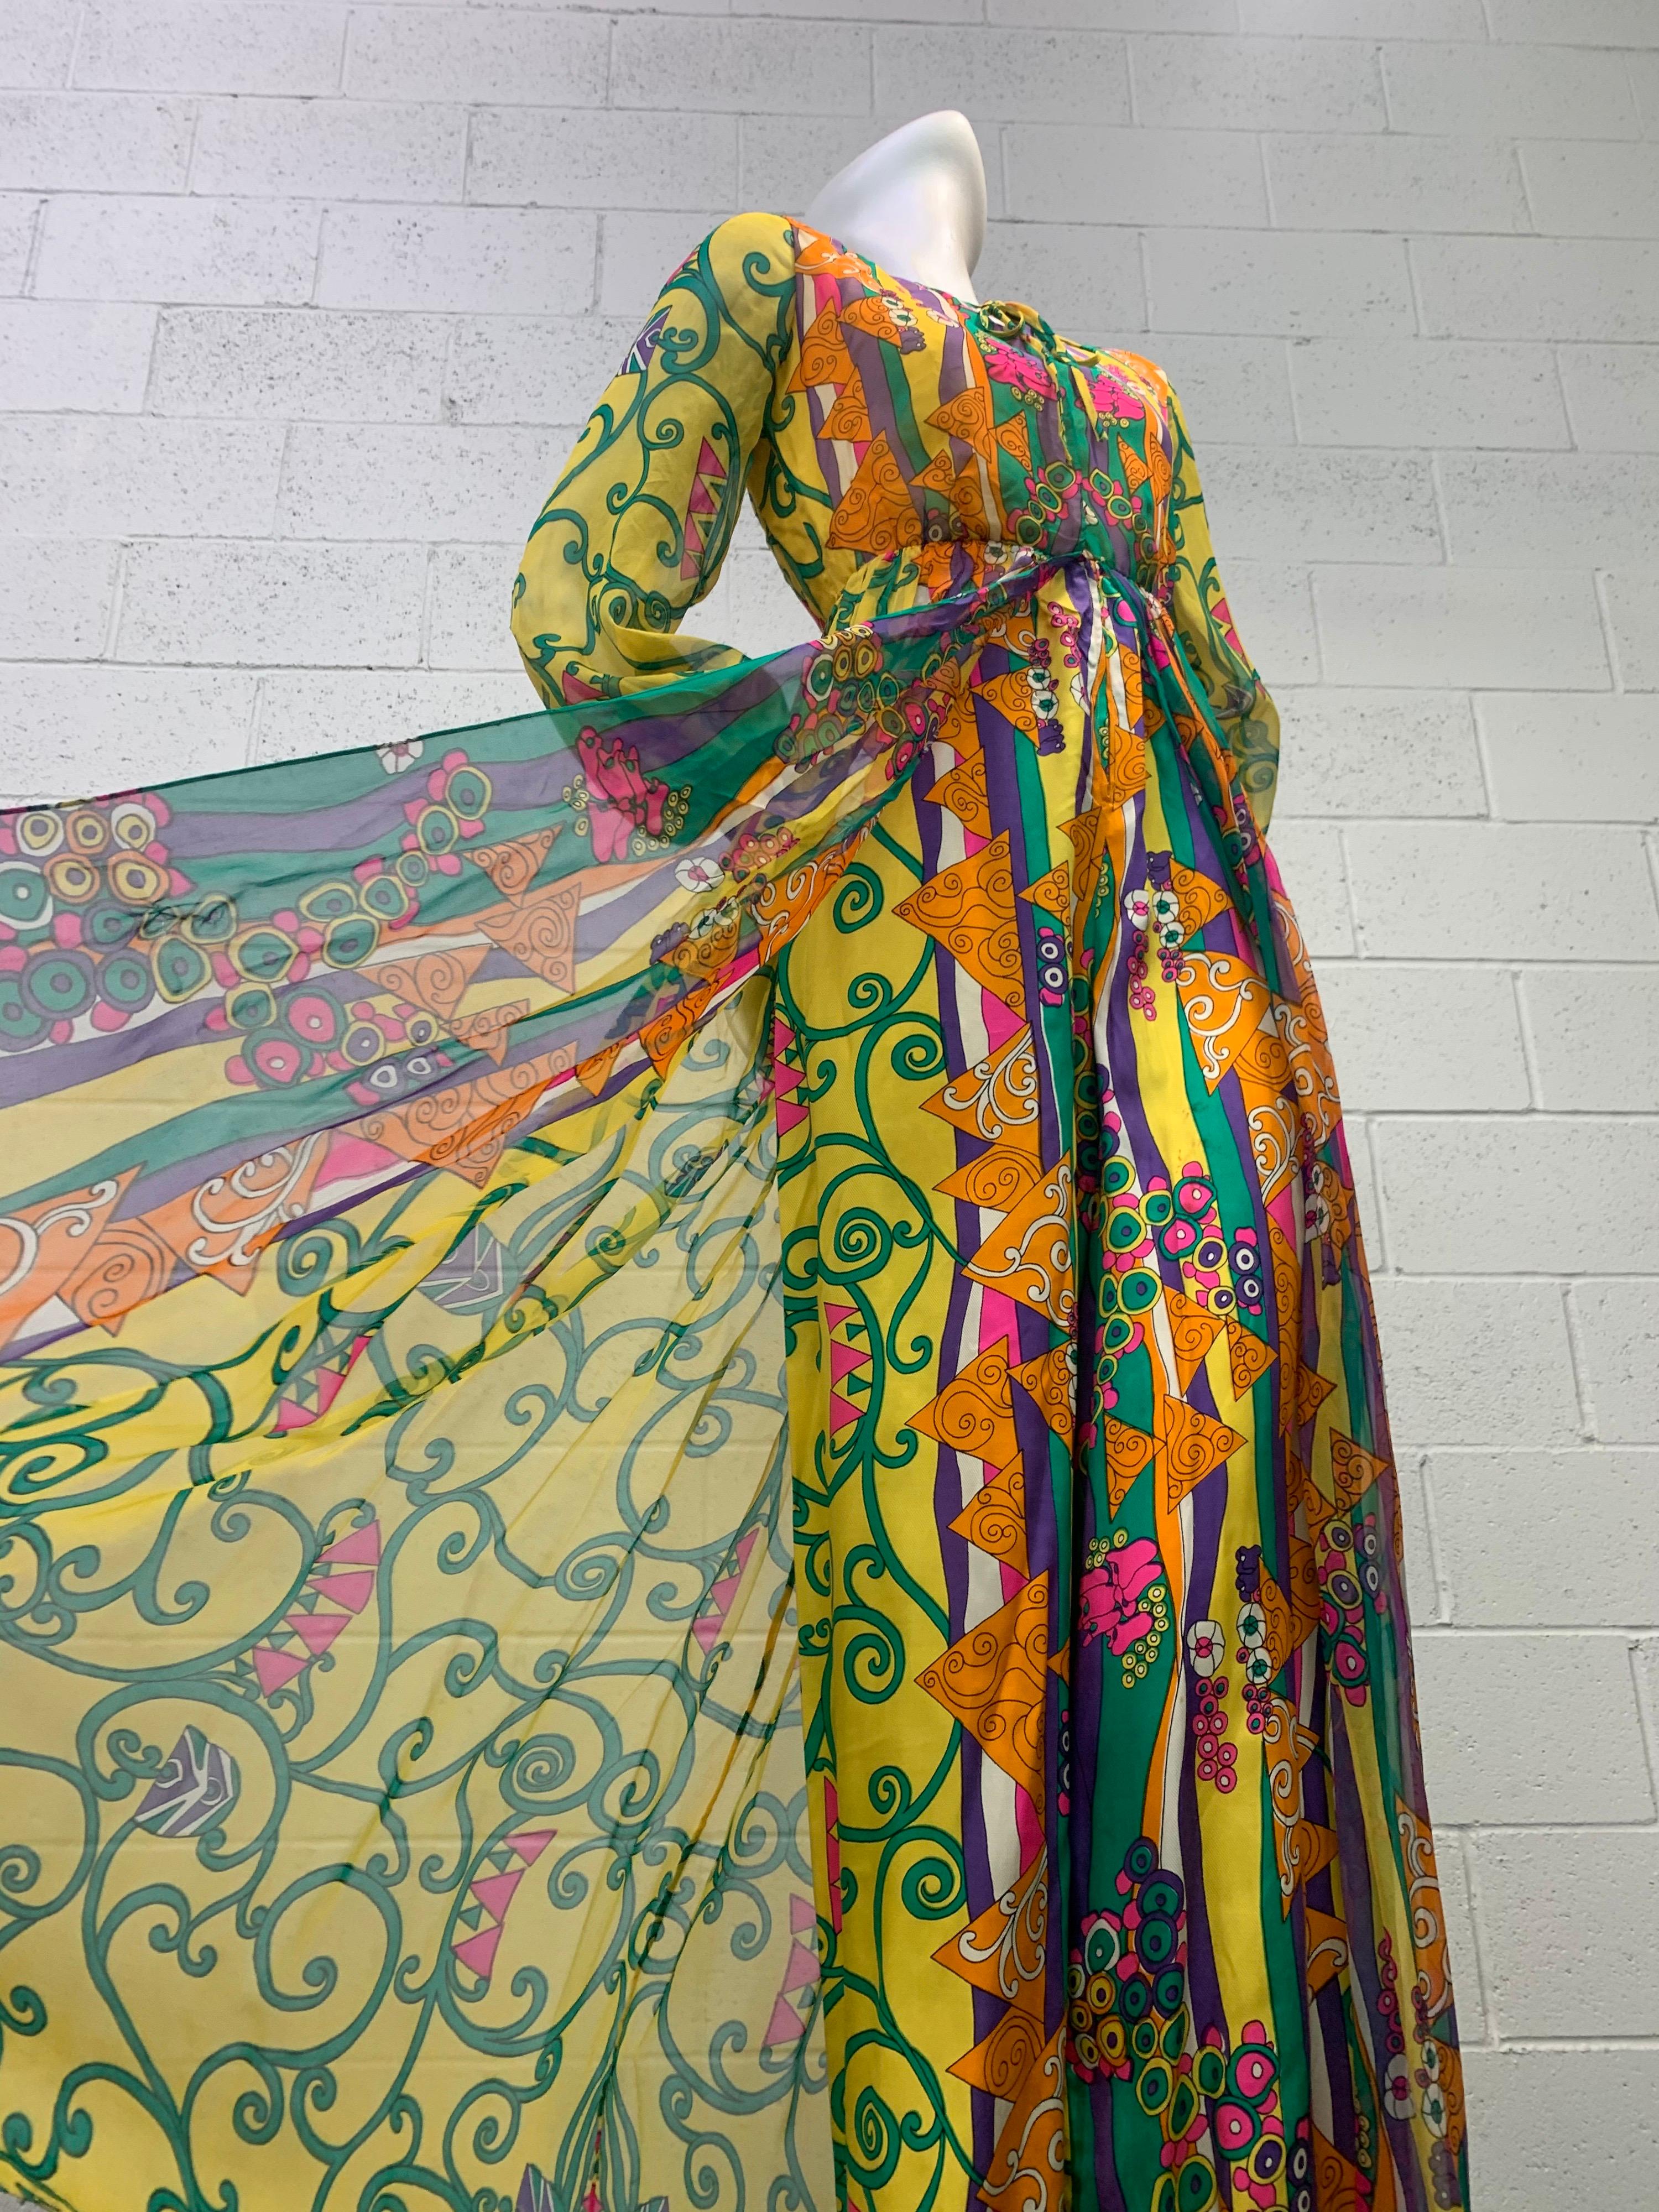 1960 Oscar de La Renta, combinaison palazzo pantalon en soie imprimée inspirée de Klimt avec superposition de mousseline de soie : Un fabuleux imprimé moderne qui évoque Gustav Klimt est superposé à une combinaison en sergé de soie pour cette pièce